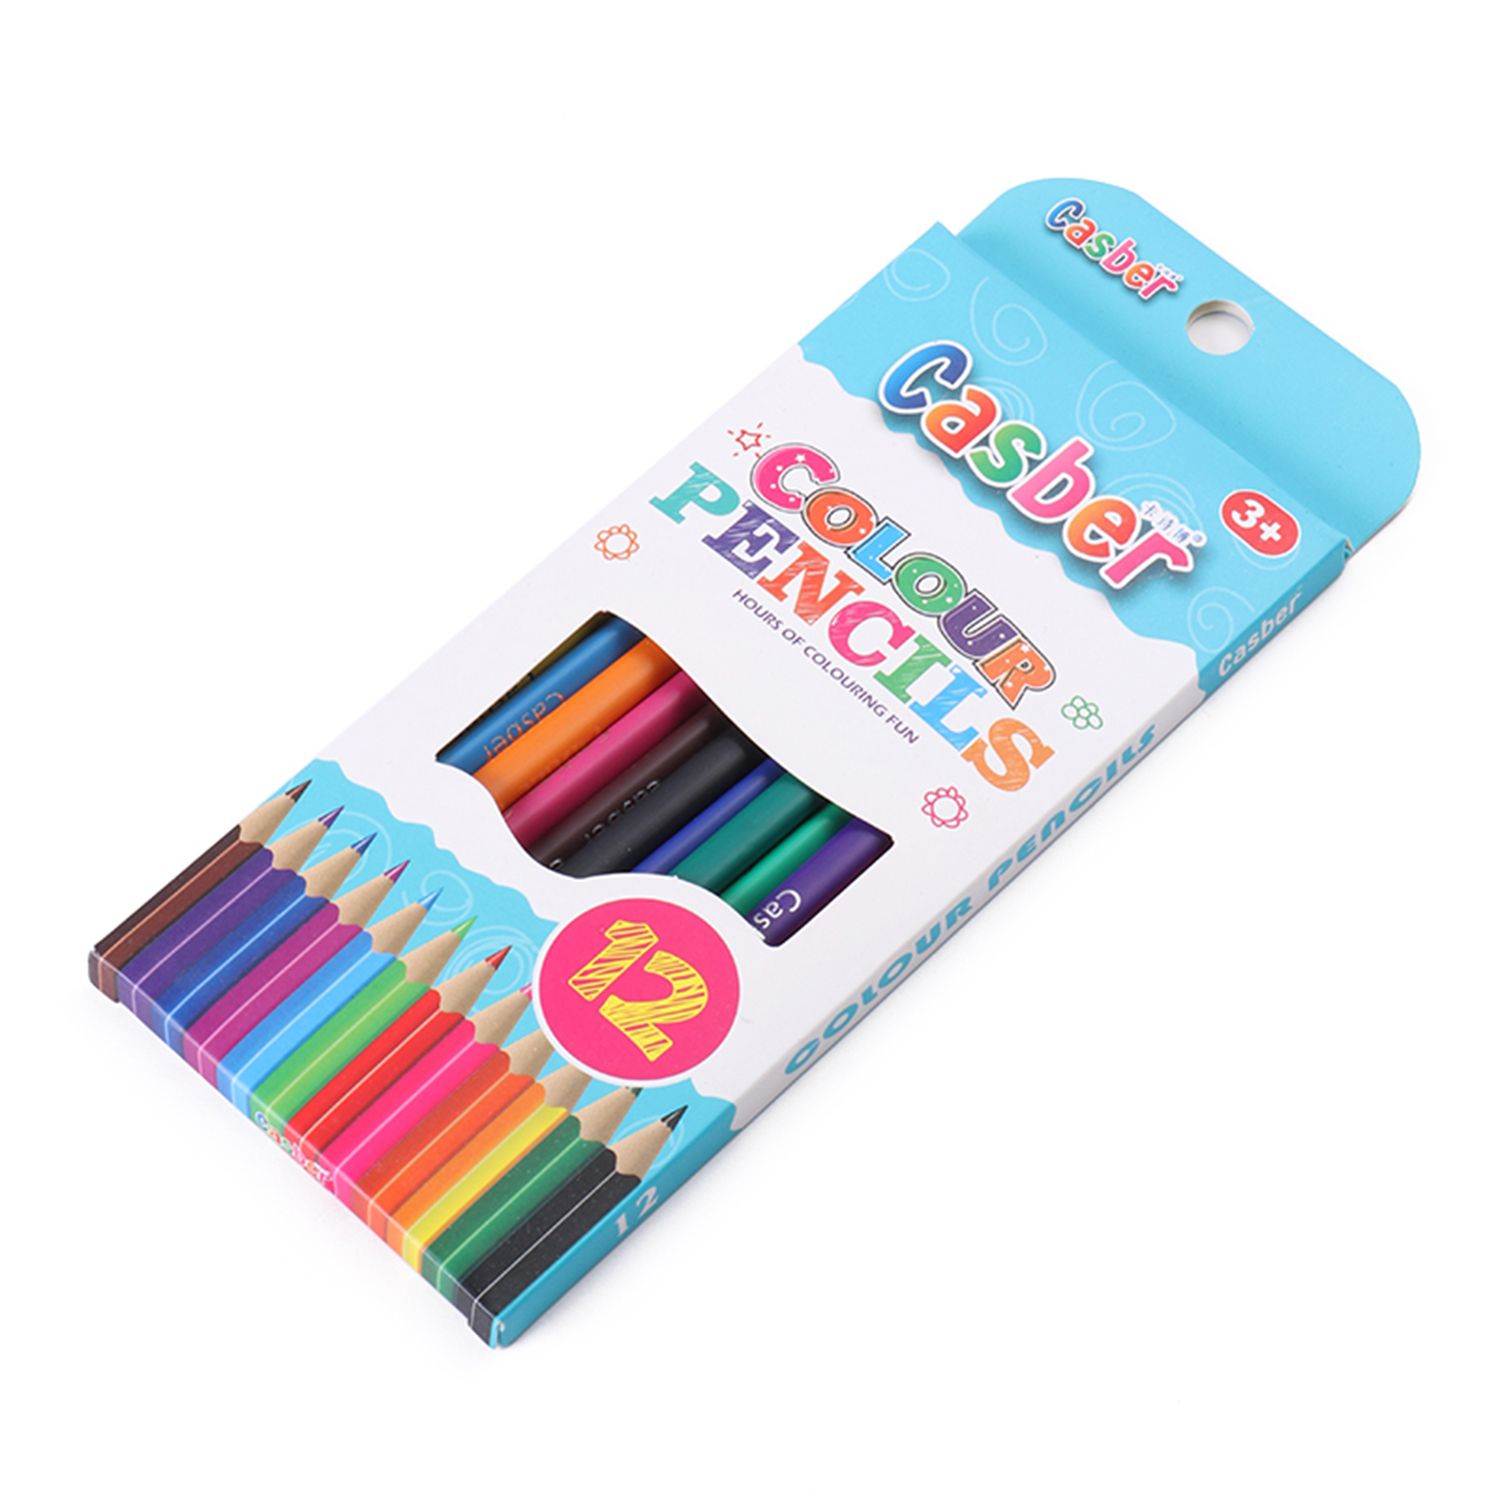 彩盒精装12色美术专用画笔 小学生秘密花园填色笔图